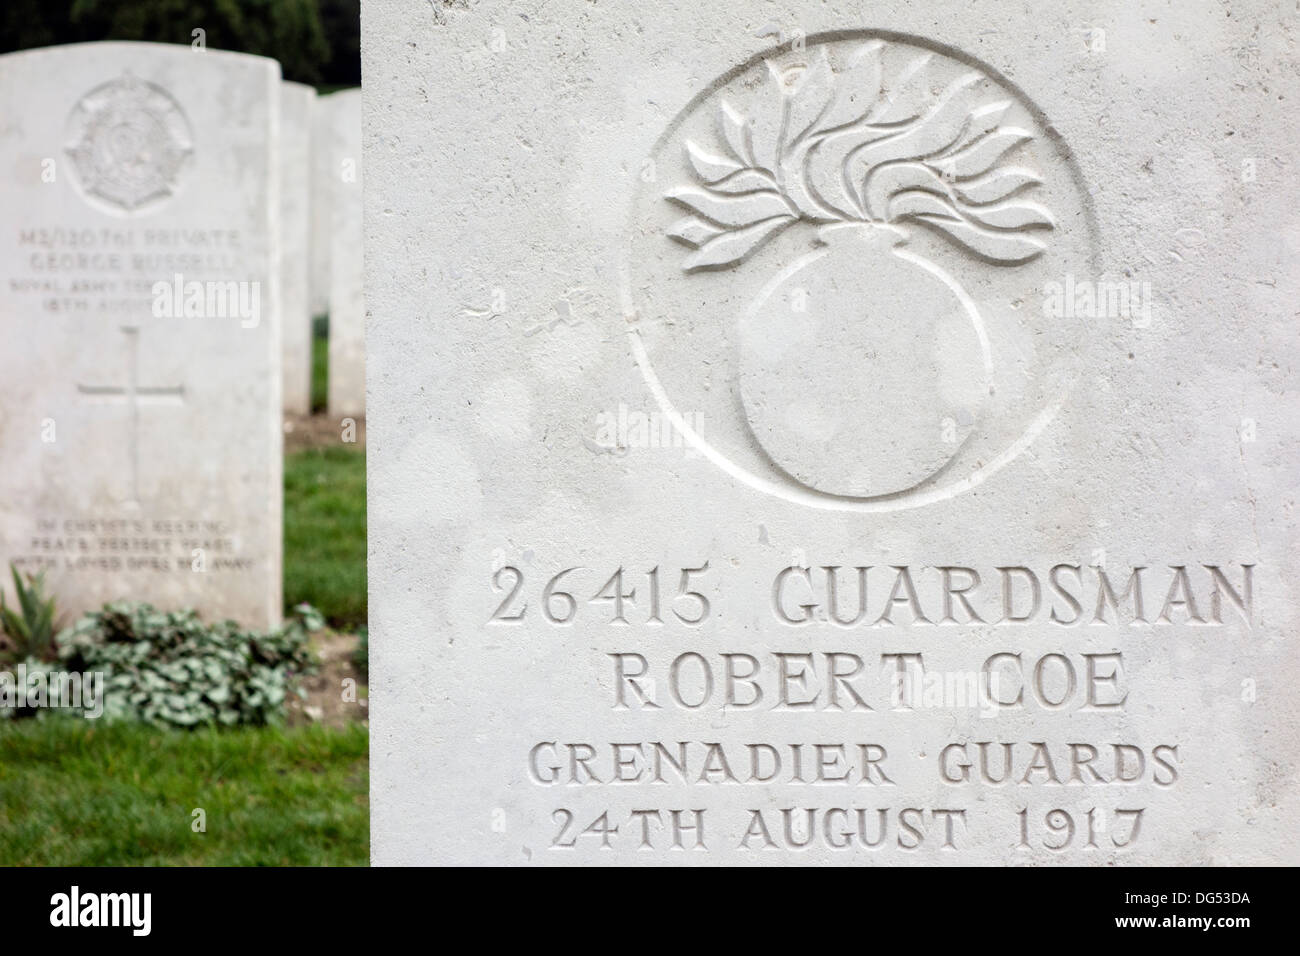 L'insigne régimentaire de Grenadier guards sur tombe de la Seconde Guerre mondiale, un soldat britannique, cimetière de la Commonwealth War Graves Commission Banque D'Images